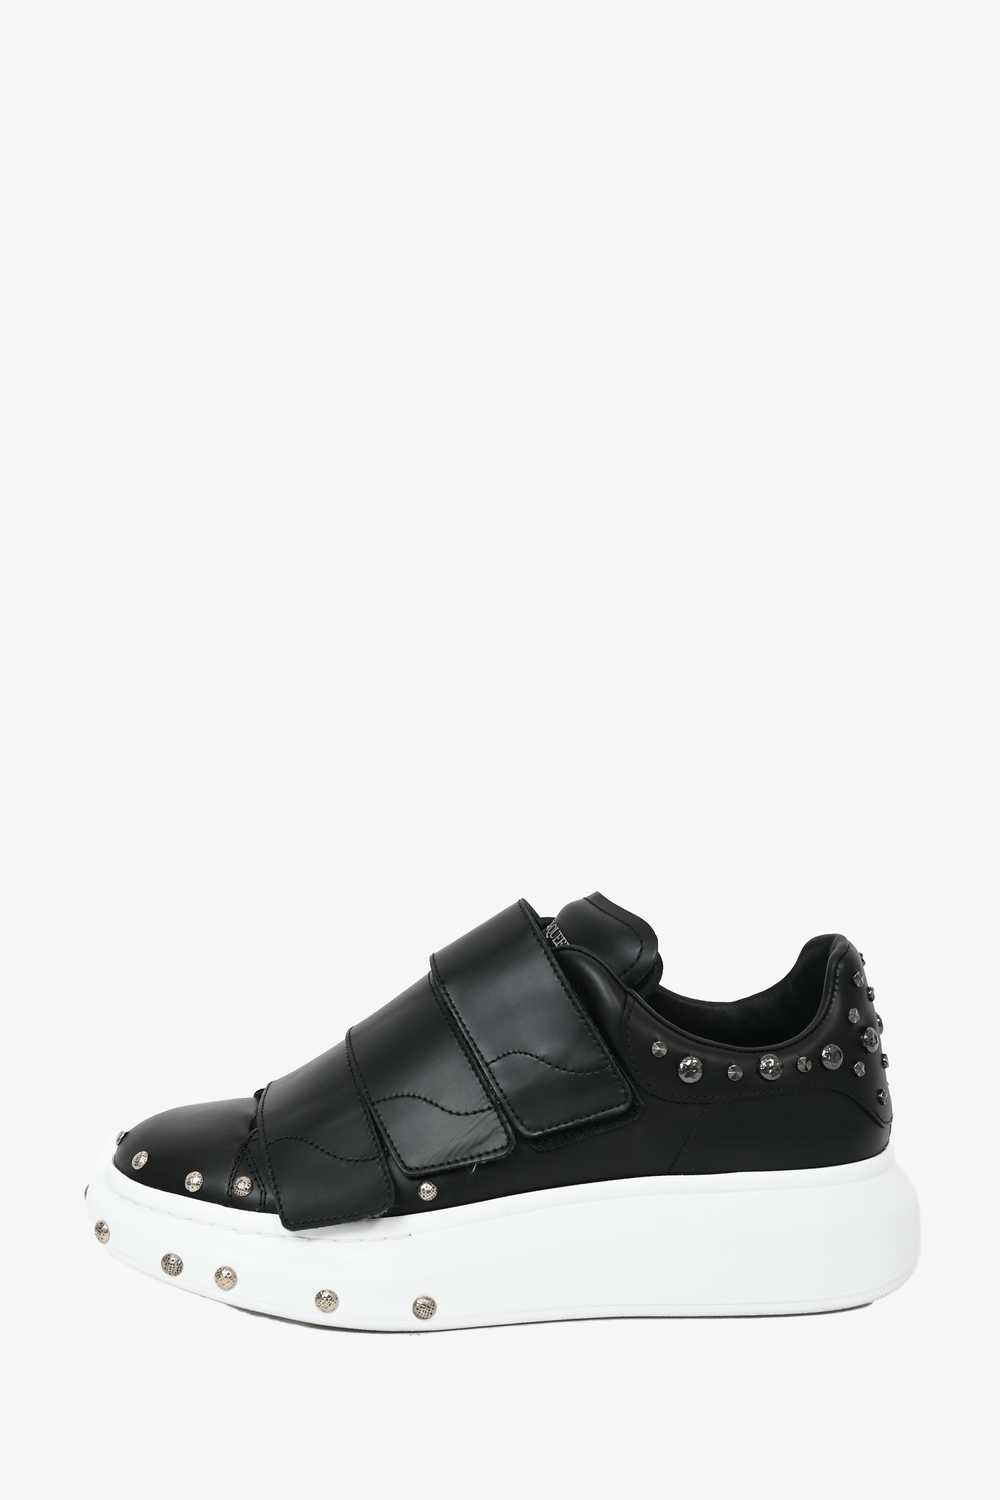 Alexander McQueen Black Leather Velcro Sneakers S… - image 3